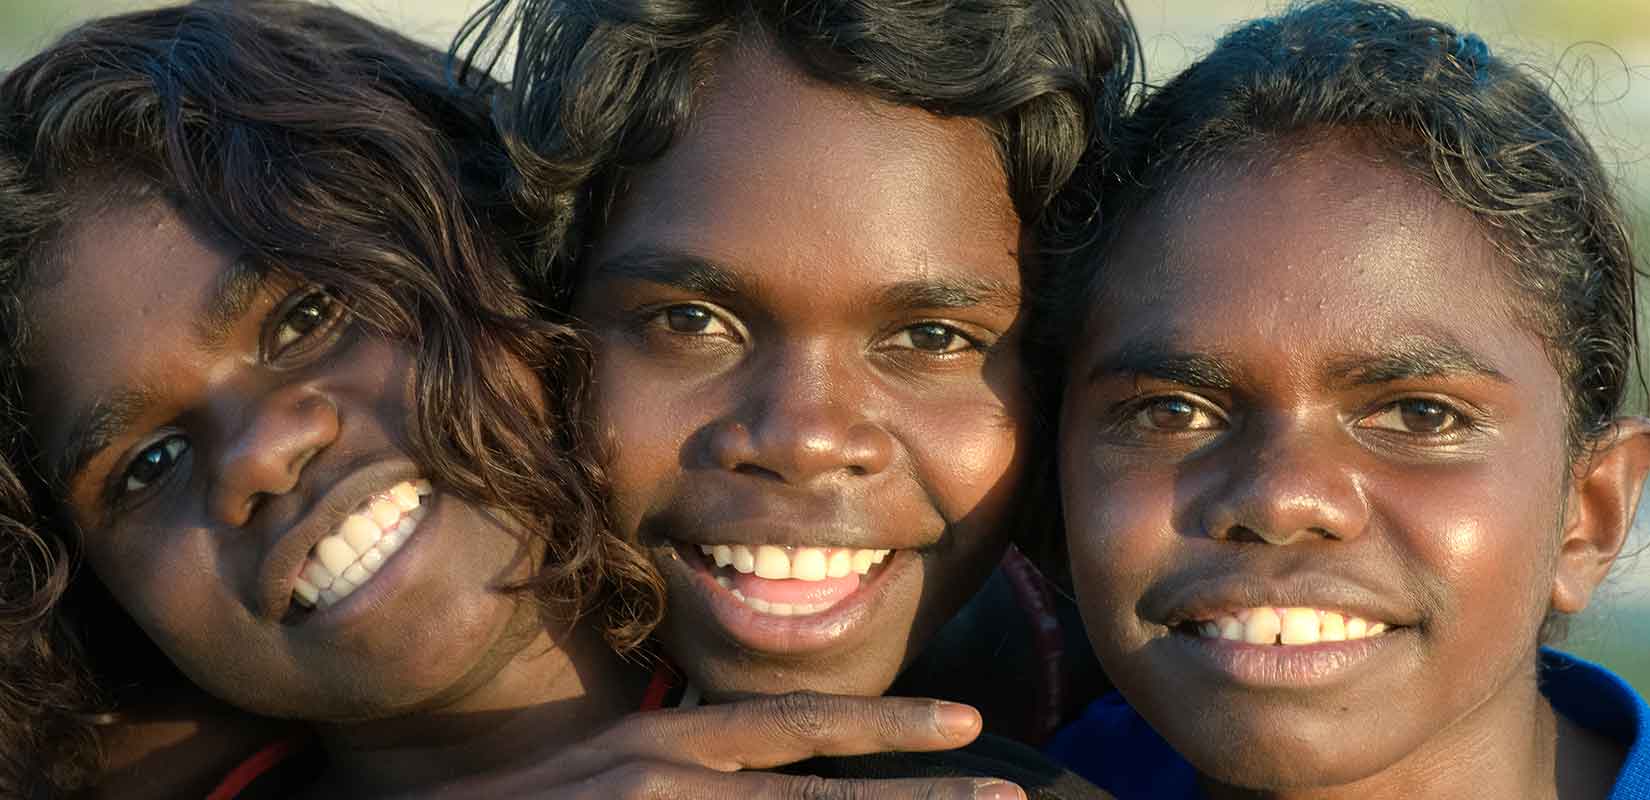 Страны относящиеся к австралоидной расе. Австралоиды океанийская раса. Австралоиды (аборигены Австралии). Меланезийская раса австралоидная. Экваториальная раса (Негро-австралоидная).